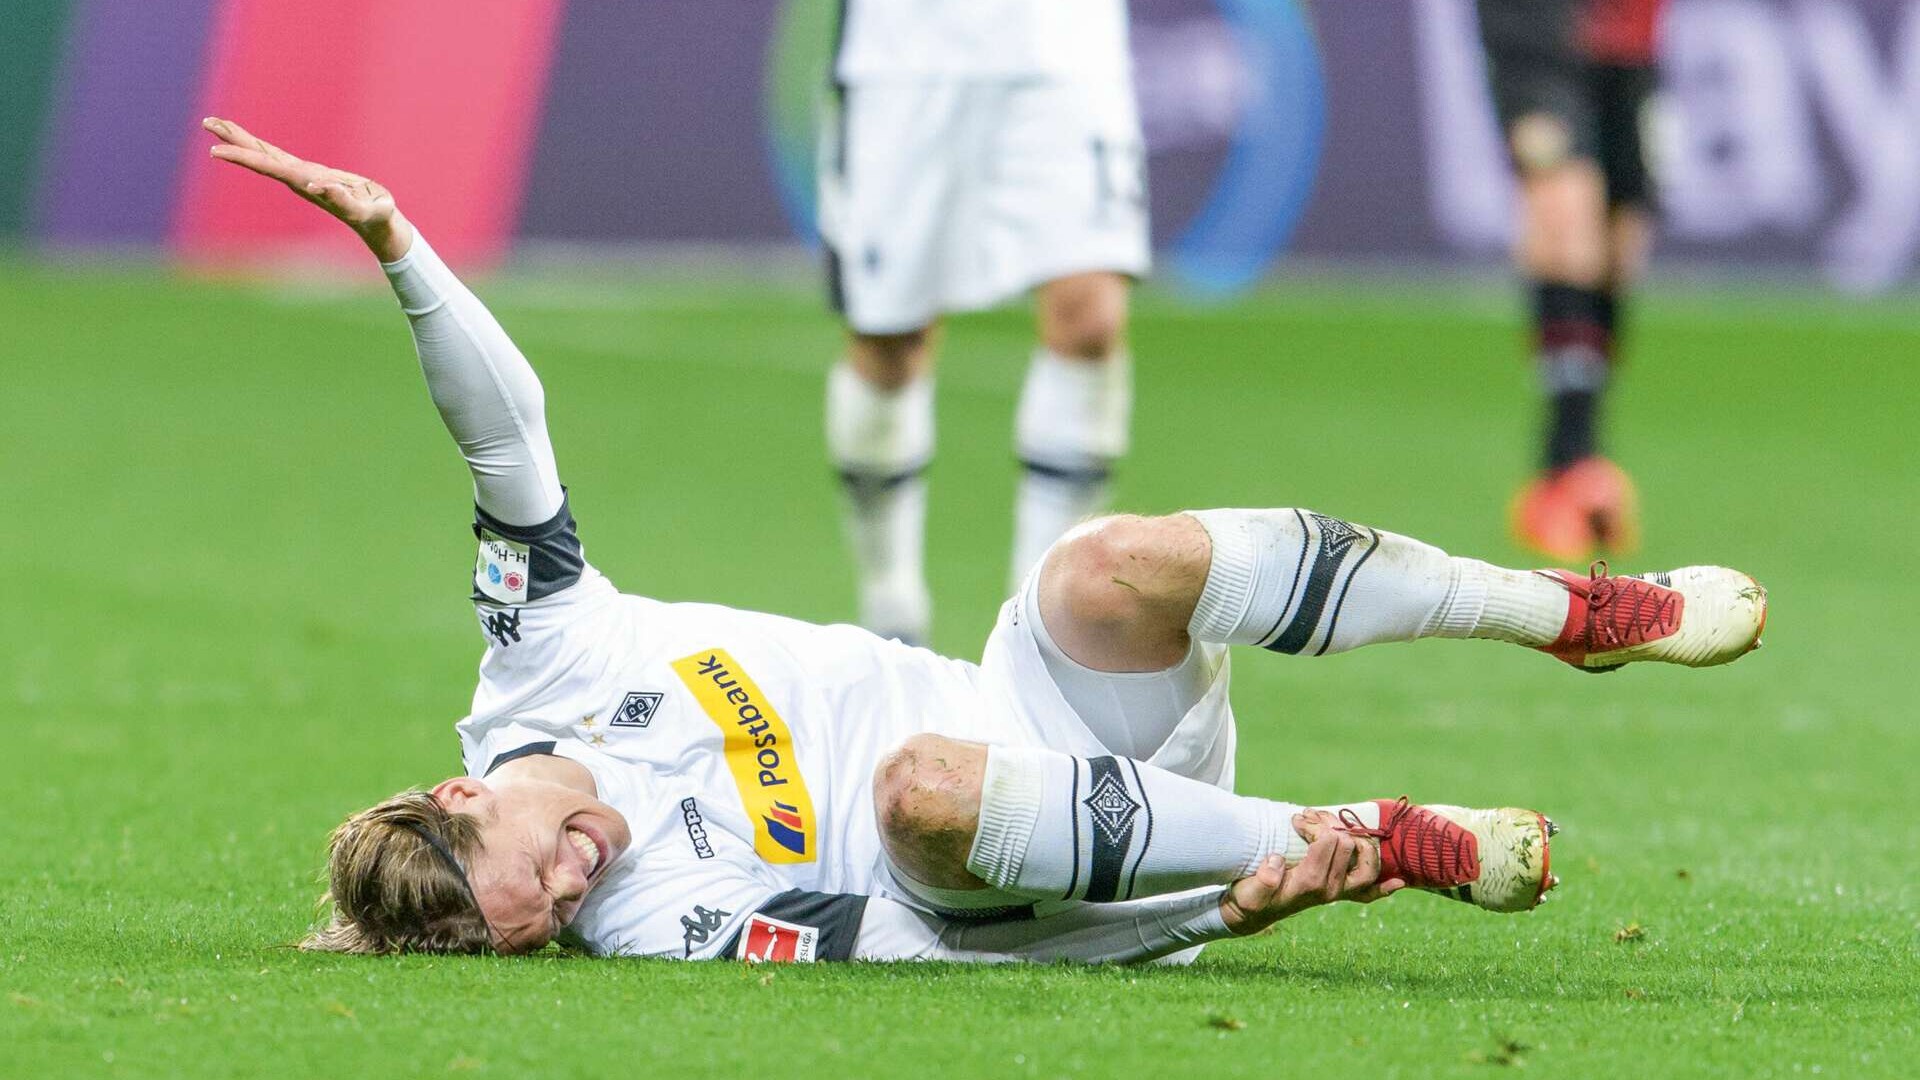 Verletzter Fußballspieler (Jannik Vestergaard) liegt mit schmerzverzerrtem Gesicht auf dem Spielfeld. 